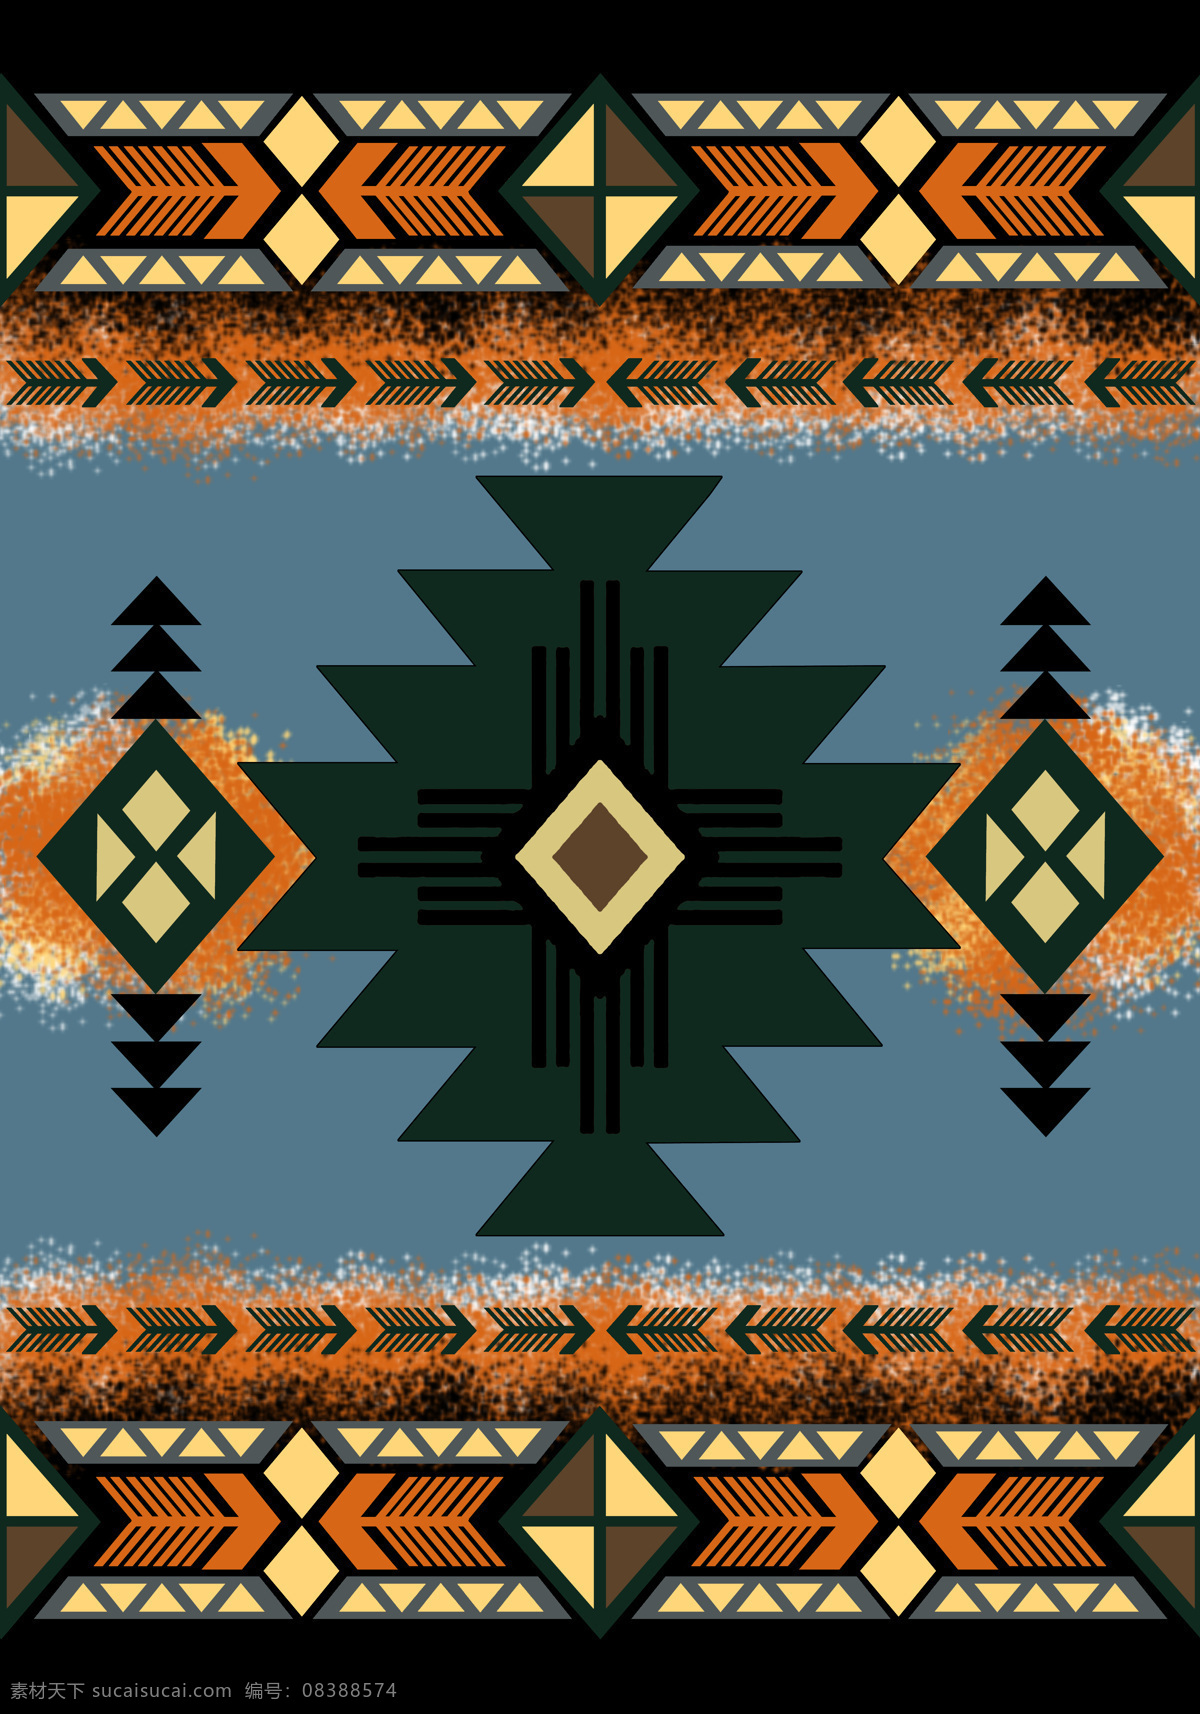 墨西哥 西南图 毛毯 传统 图腾 底纹 花纹 复古花纹 名族 文化 黑色 墨蓝 蓝 传统文化 文化艺术